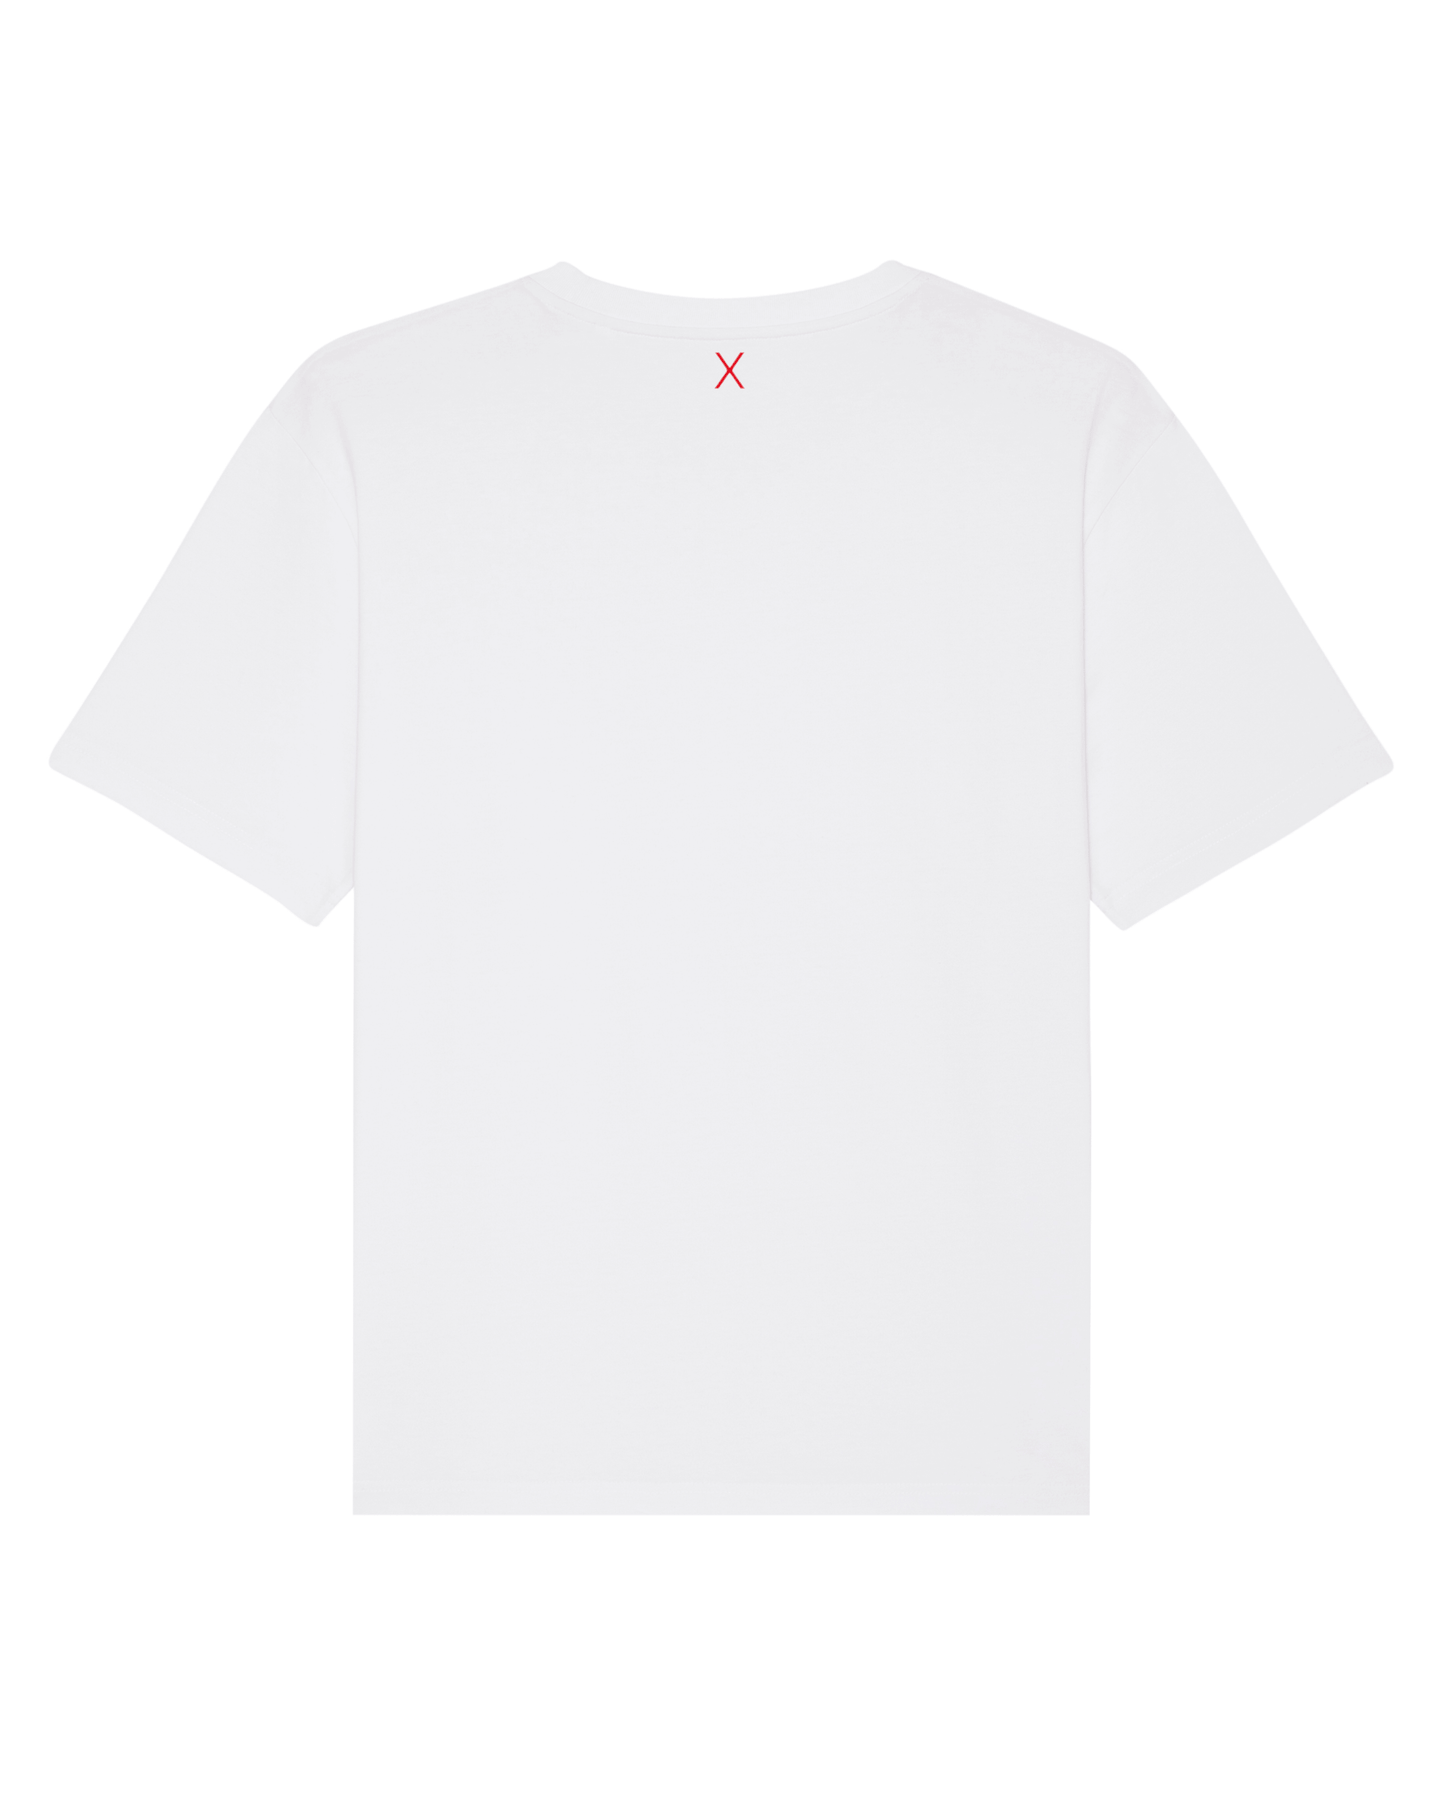 Weißes T-Shirt (Rückseite). Mittig, direkt unter dem Nackensaum ist das ikonische Extra "X" in rot.